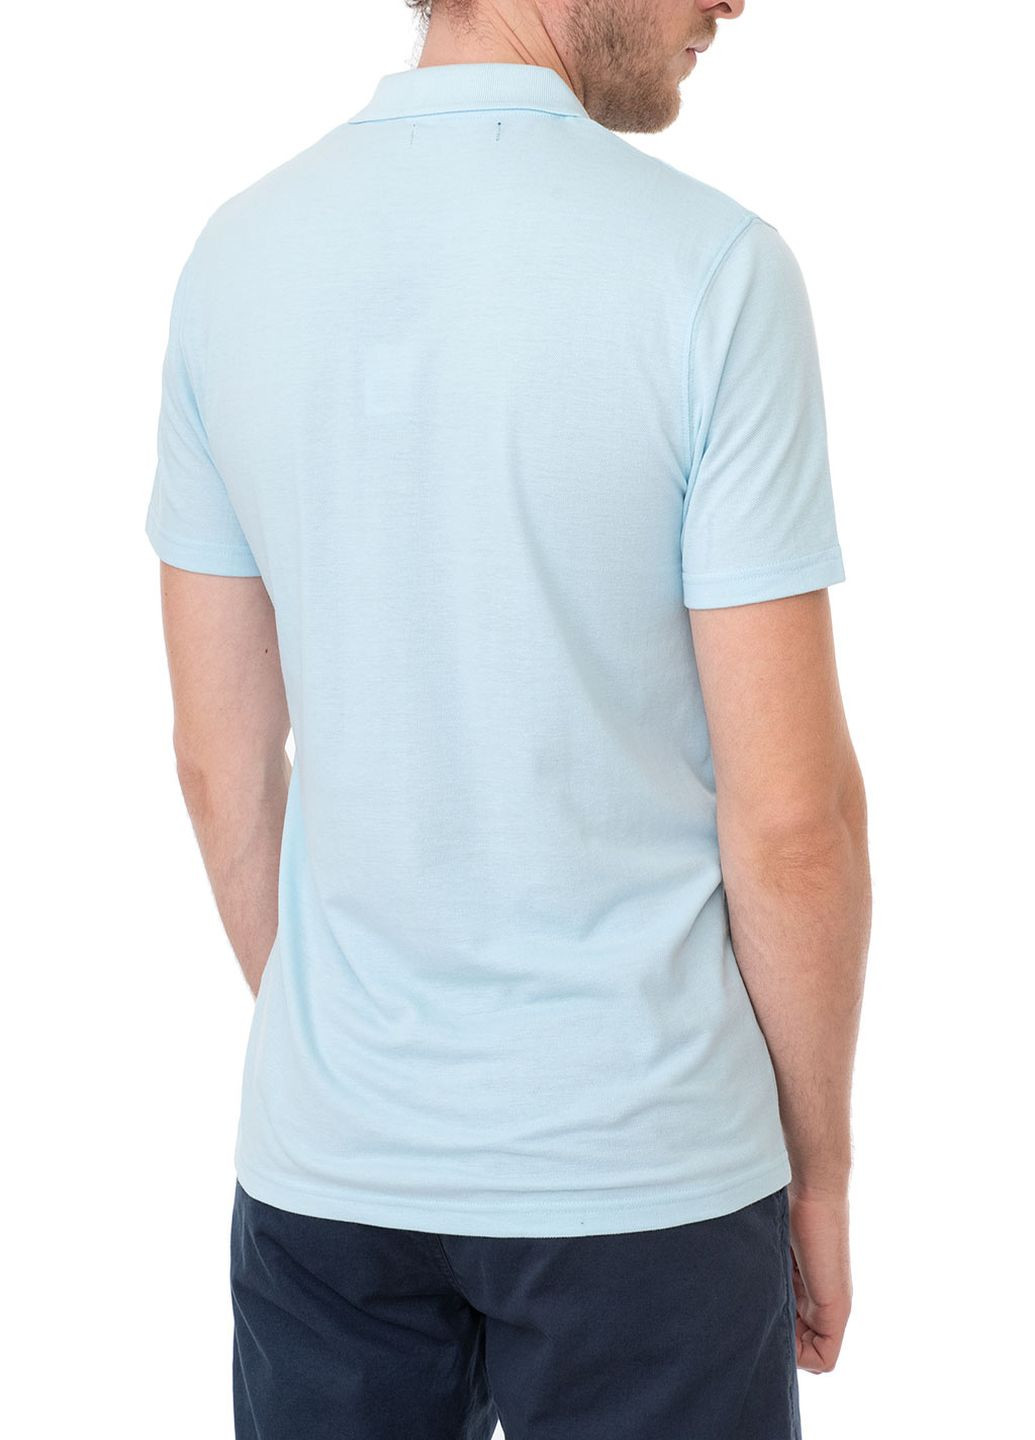 Голубой футболка-поло для мужчин E-Bound